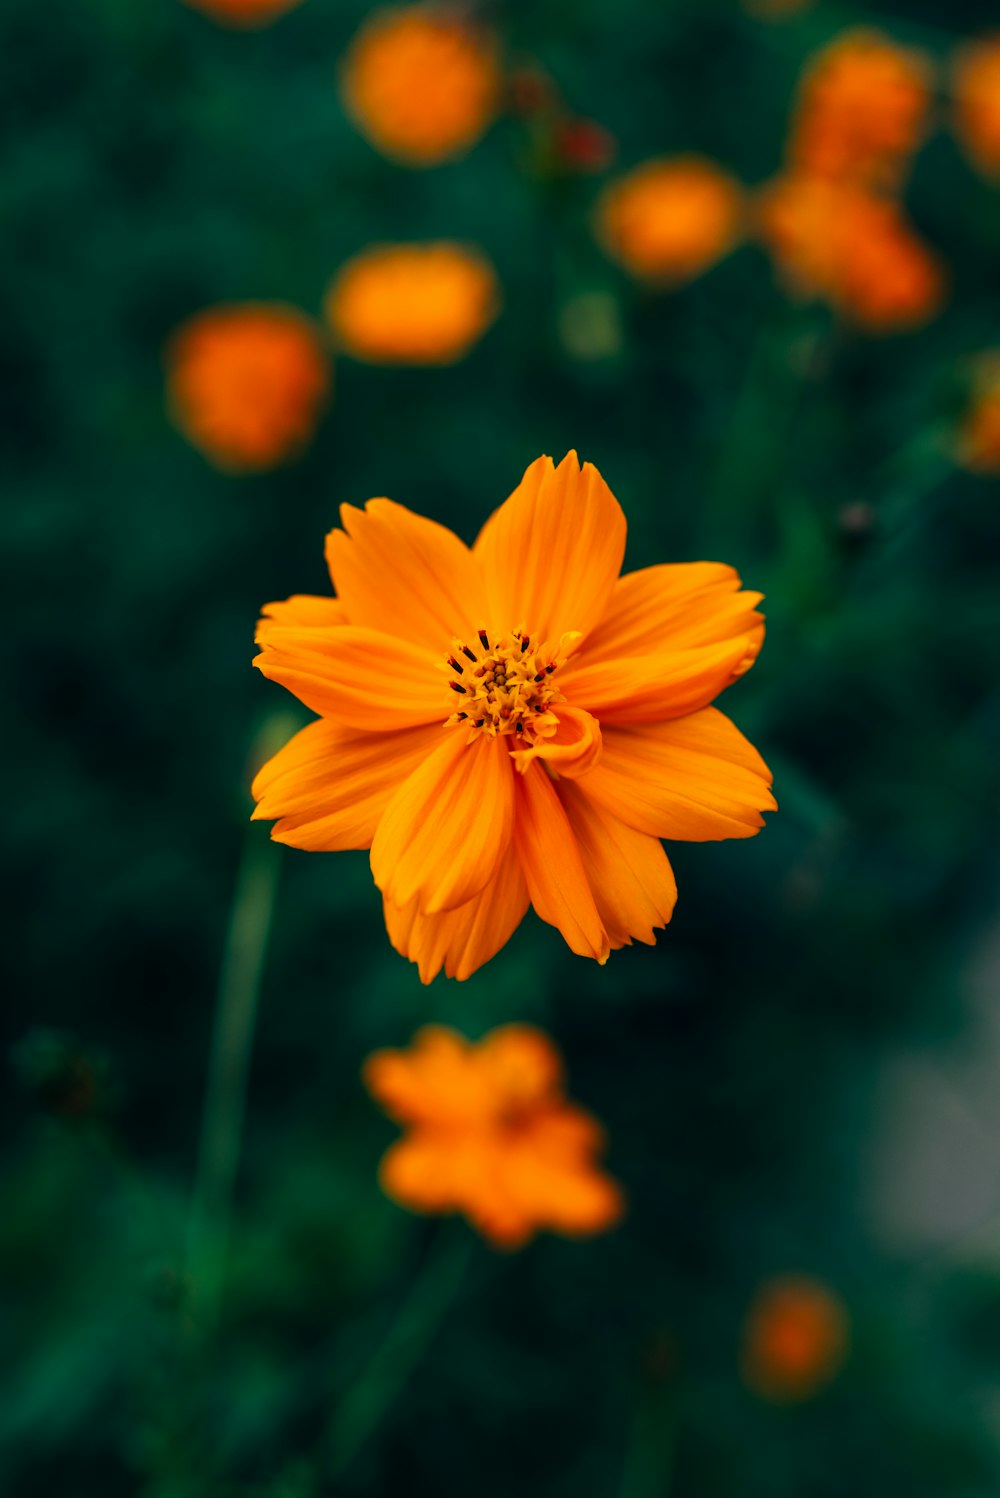 550+ Orange Flower Pictures | Download Free Images on Unsplash